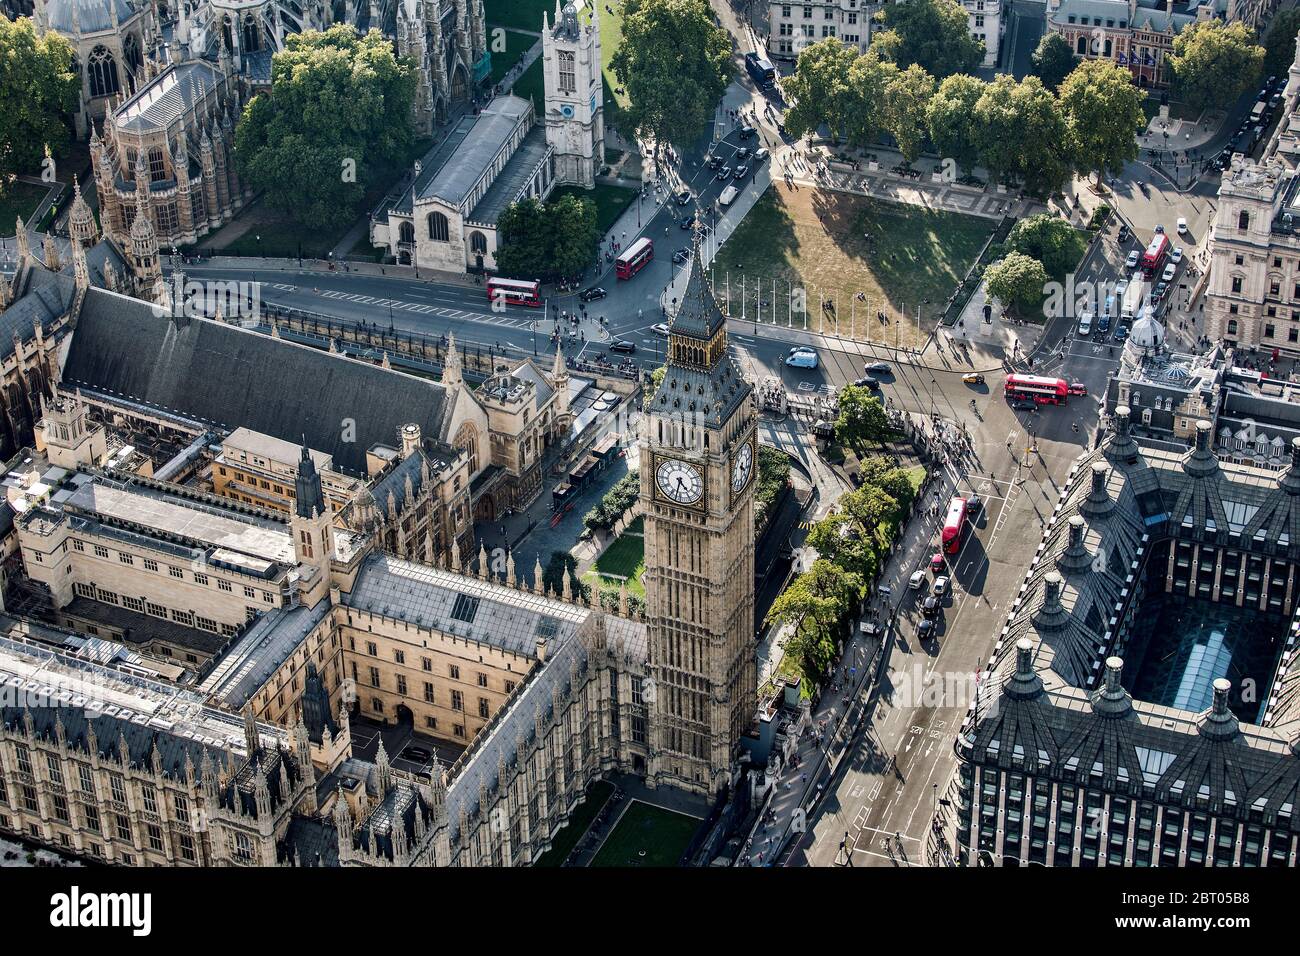 Vista aérea del Big Ben y la Plaza del Parlamento en Londres, las Casas del Parlamento. Foto de stock